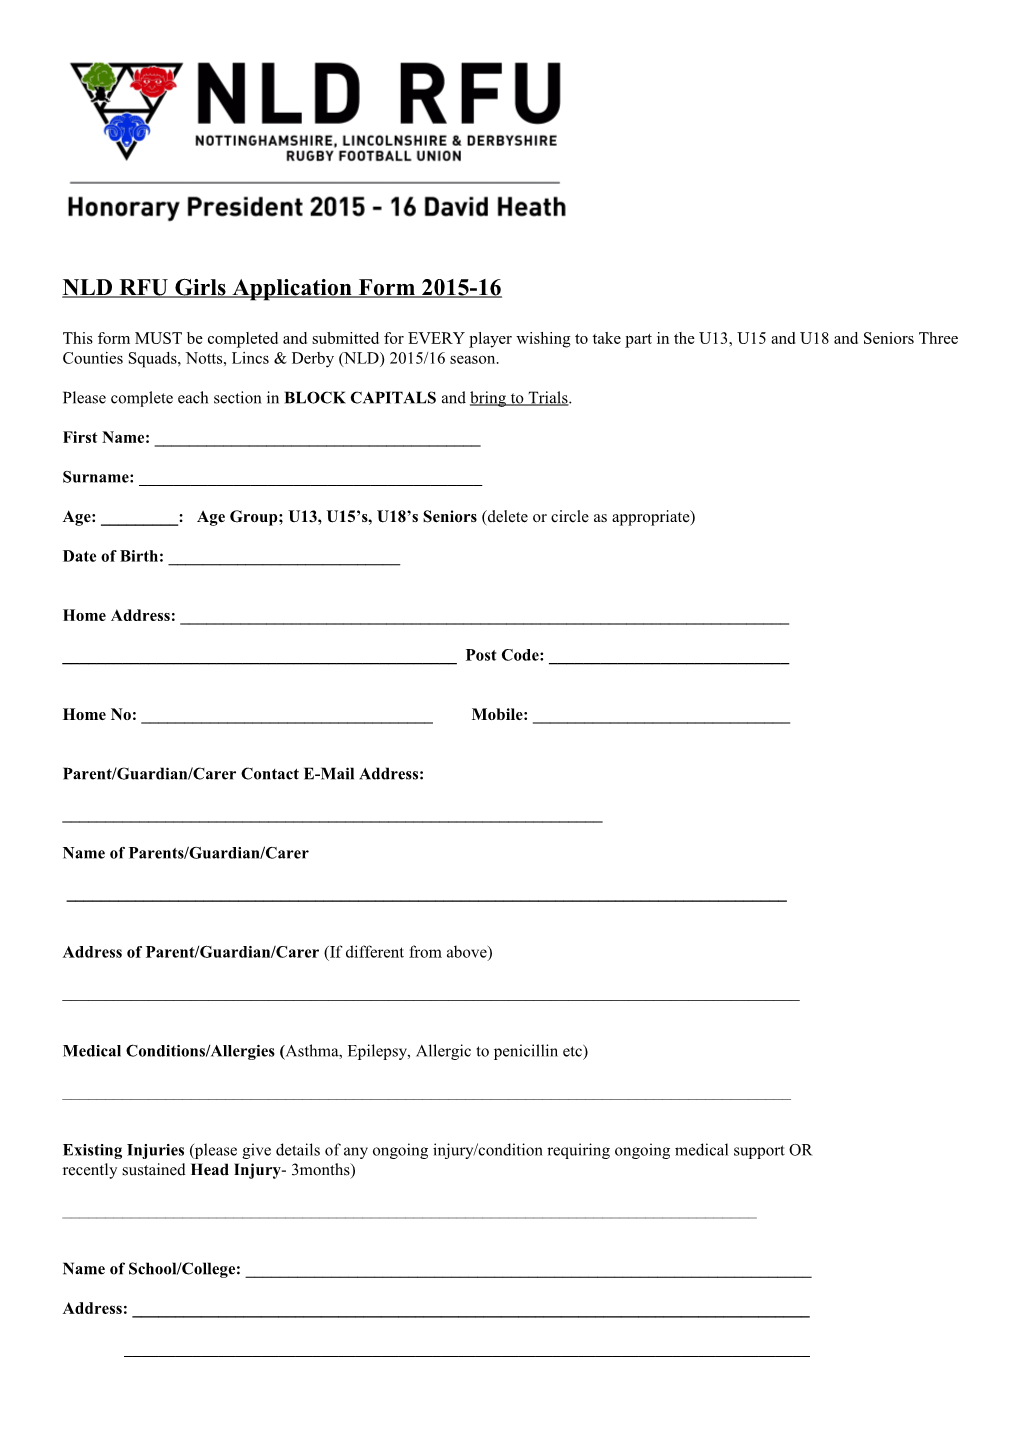 NLD RFU Girls Application Form 2015-16